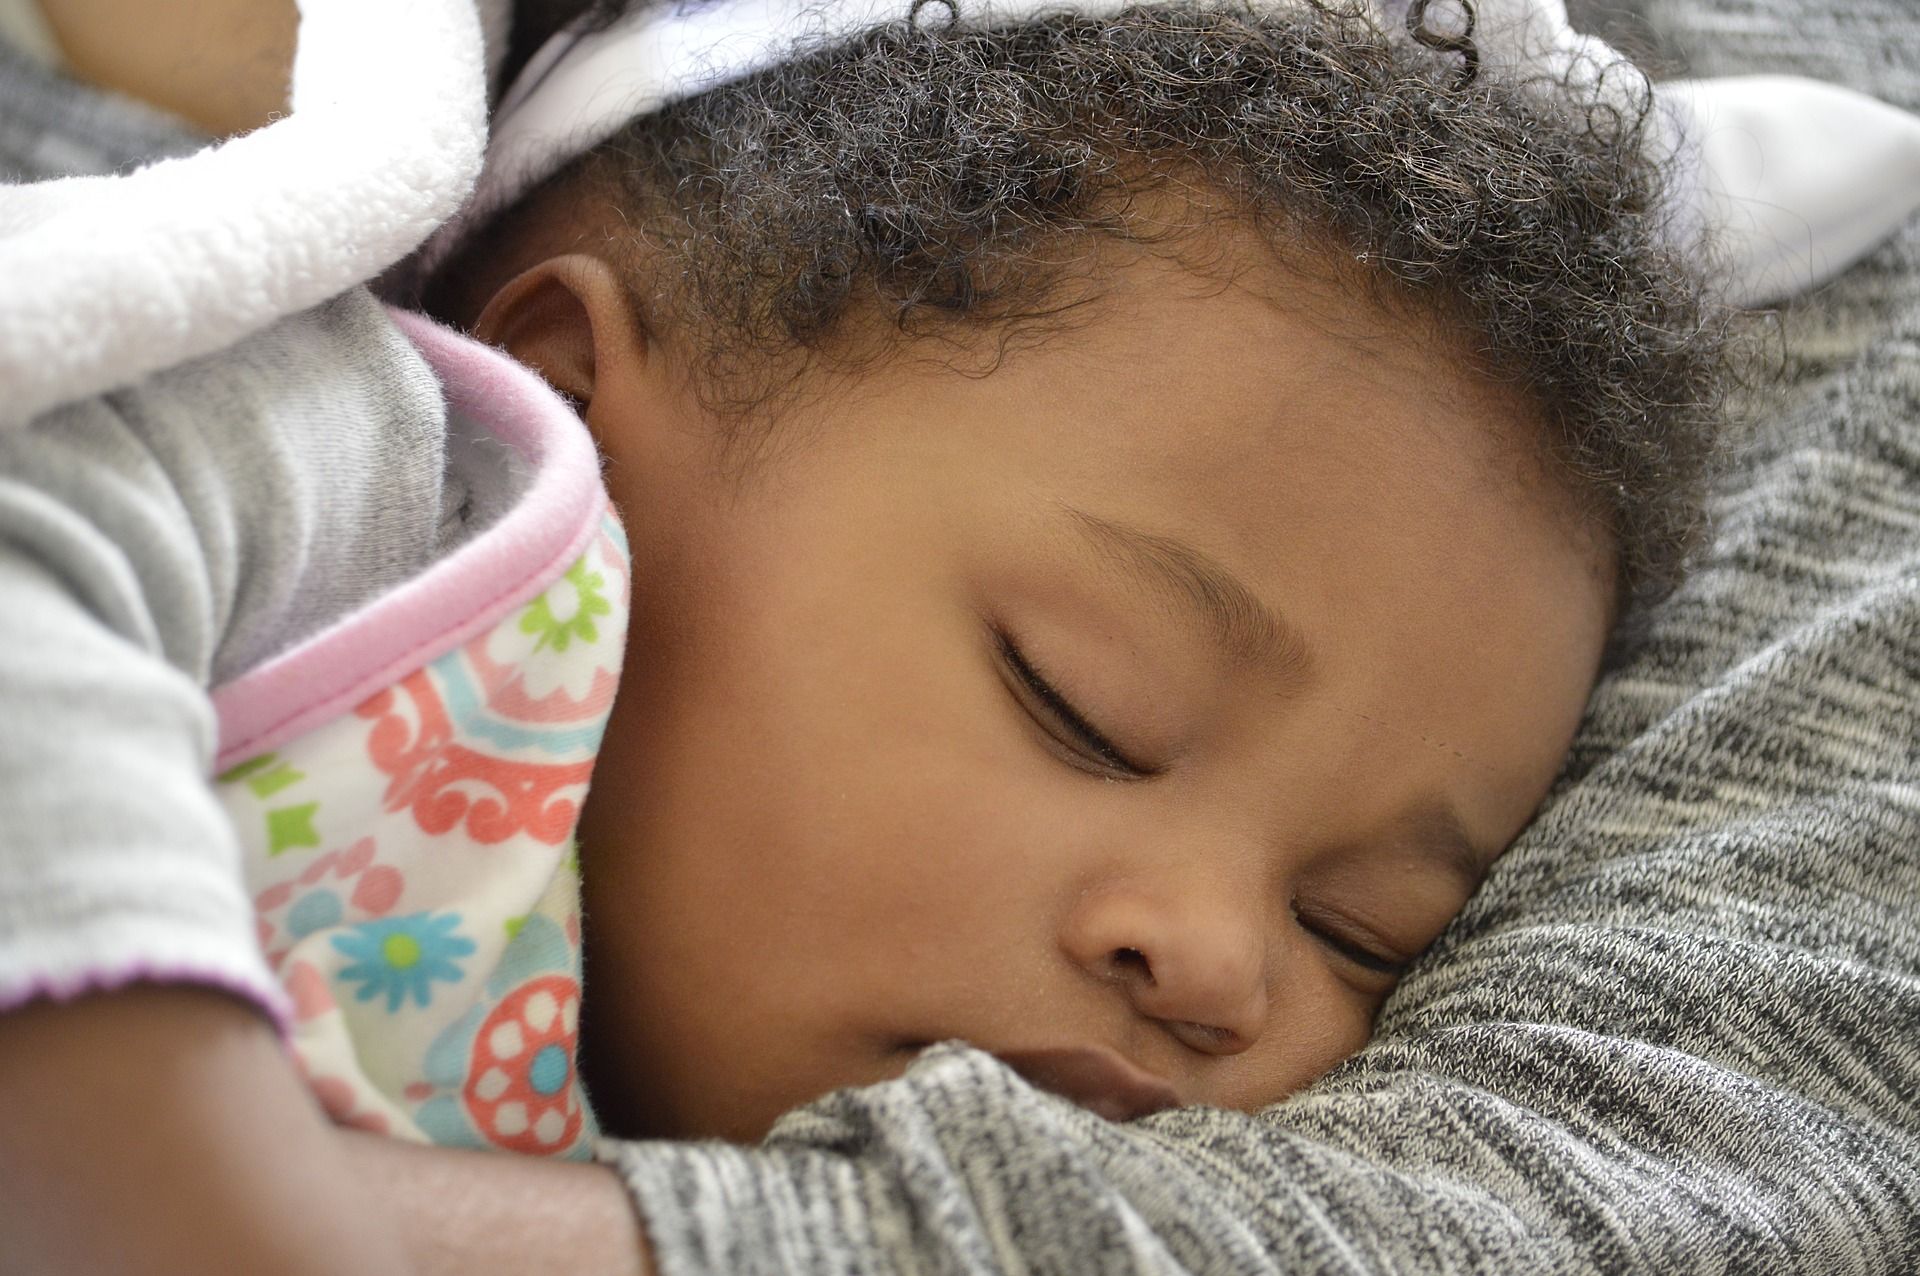 Ein Baby schläft friedlich auf einer grauen Decke. | Quelle: Shutterstock